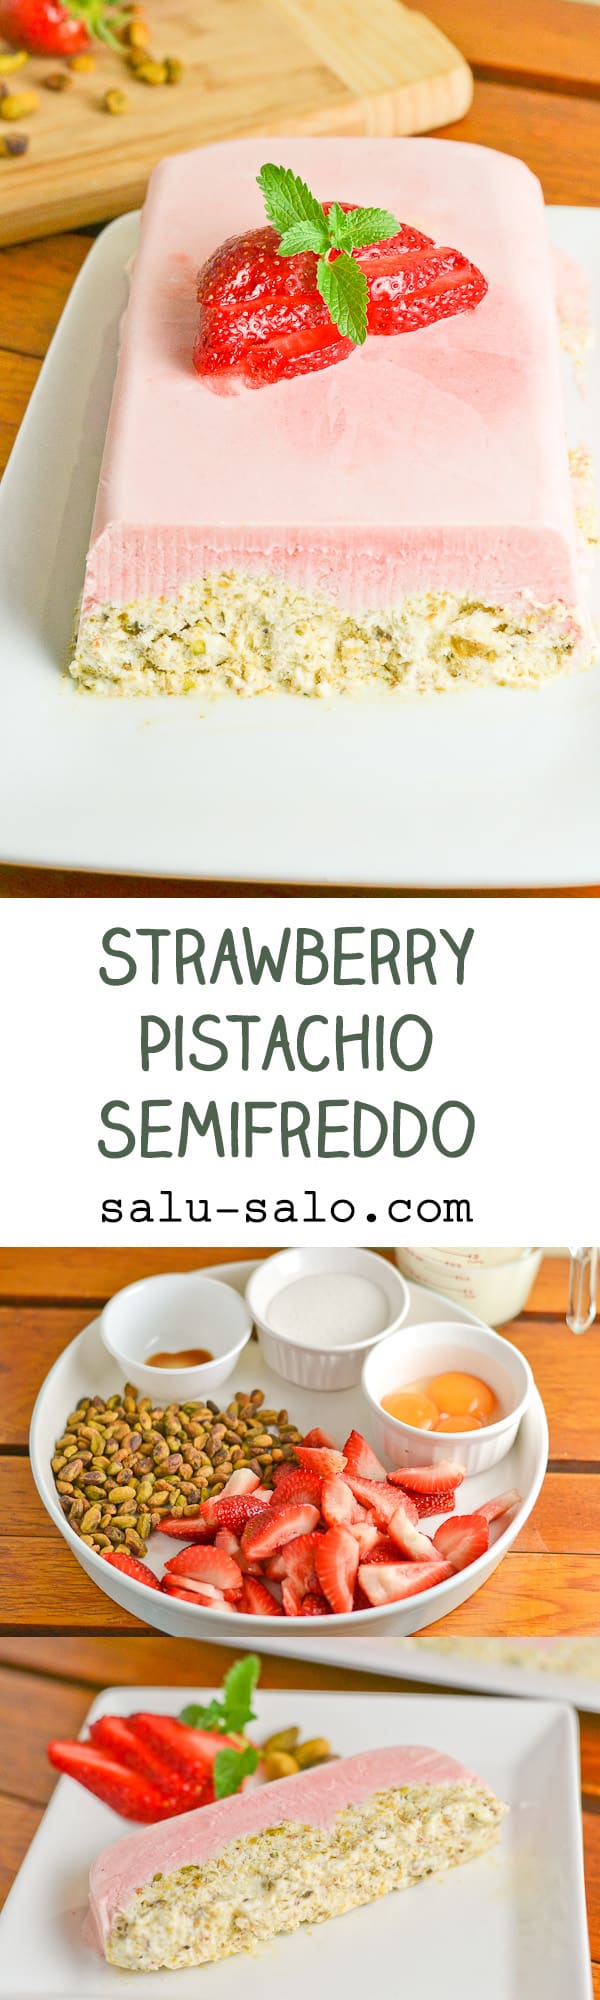 Strawberry Pistachio Semifreddo